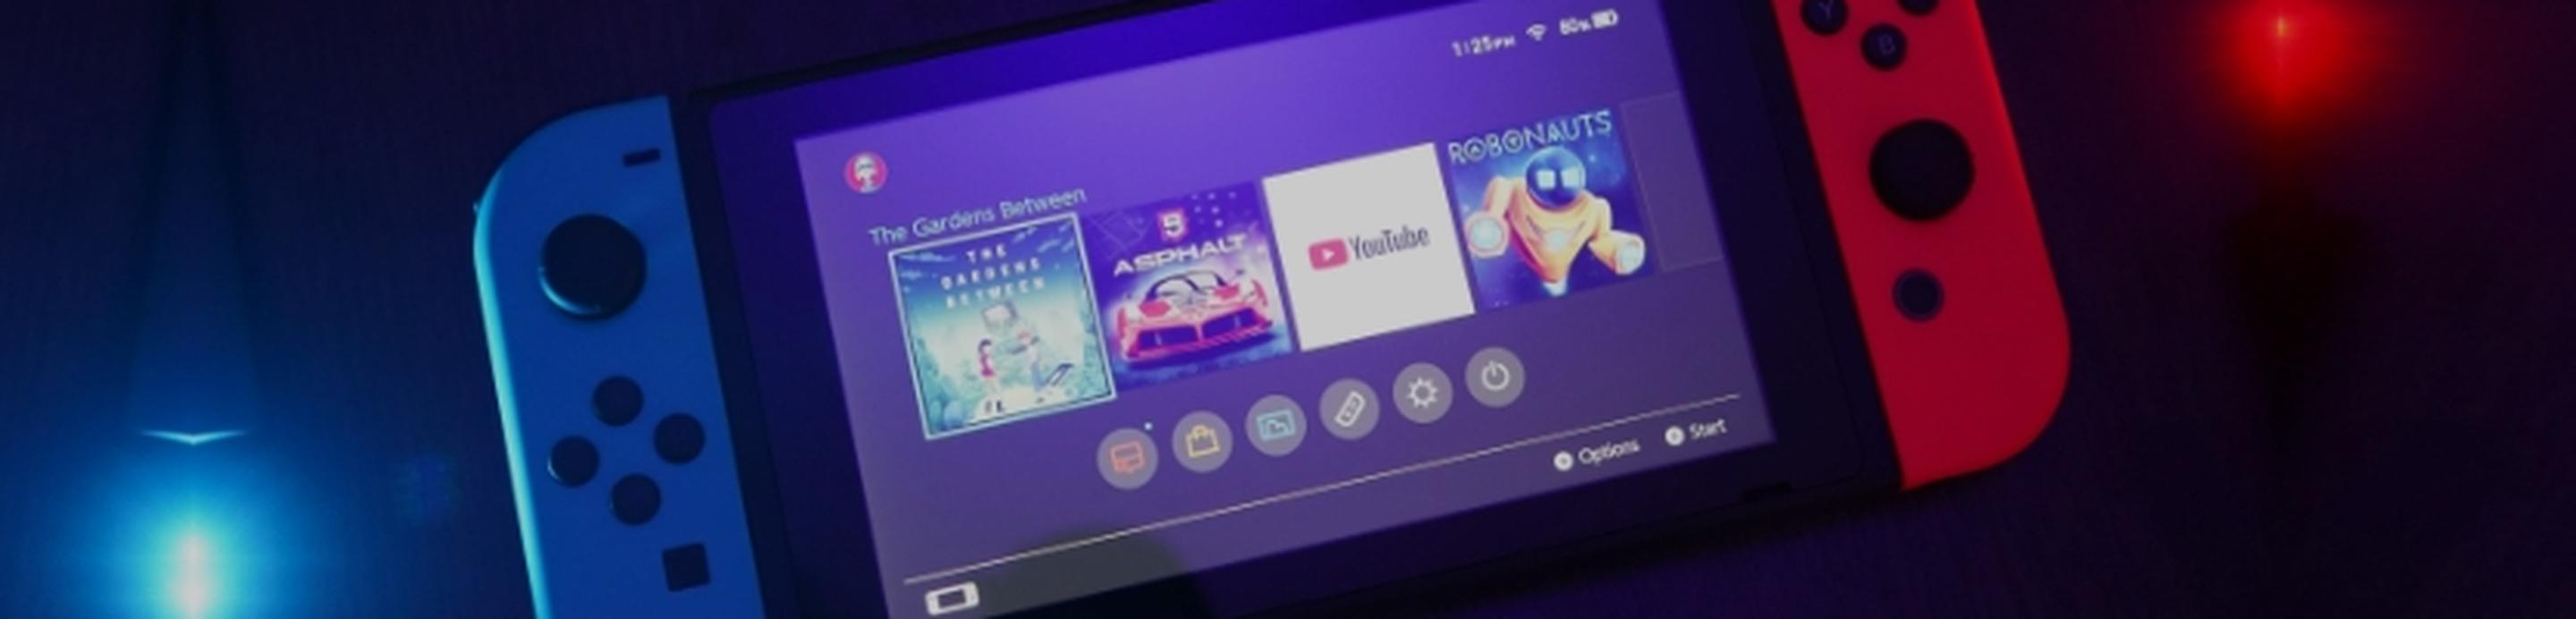 Die Nintendo Switch, in Form der mobilen Spielkonsole